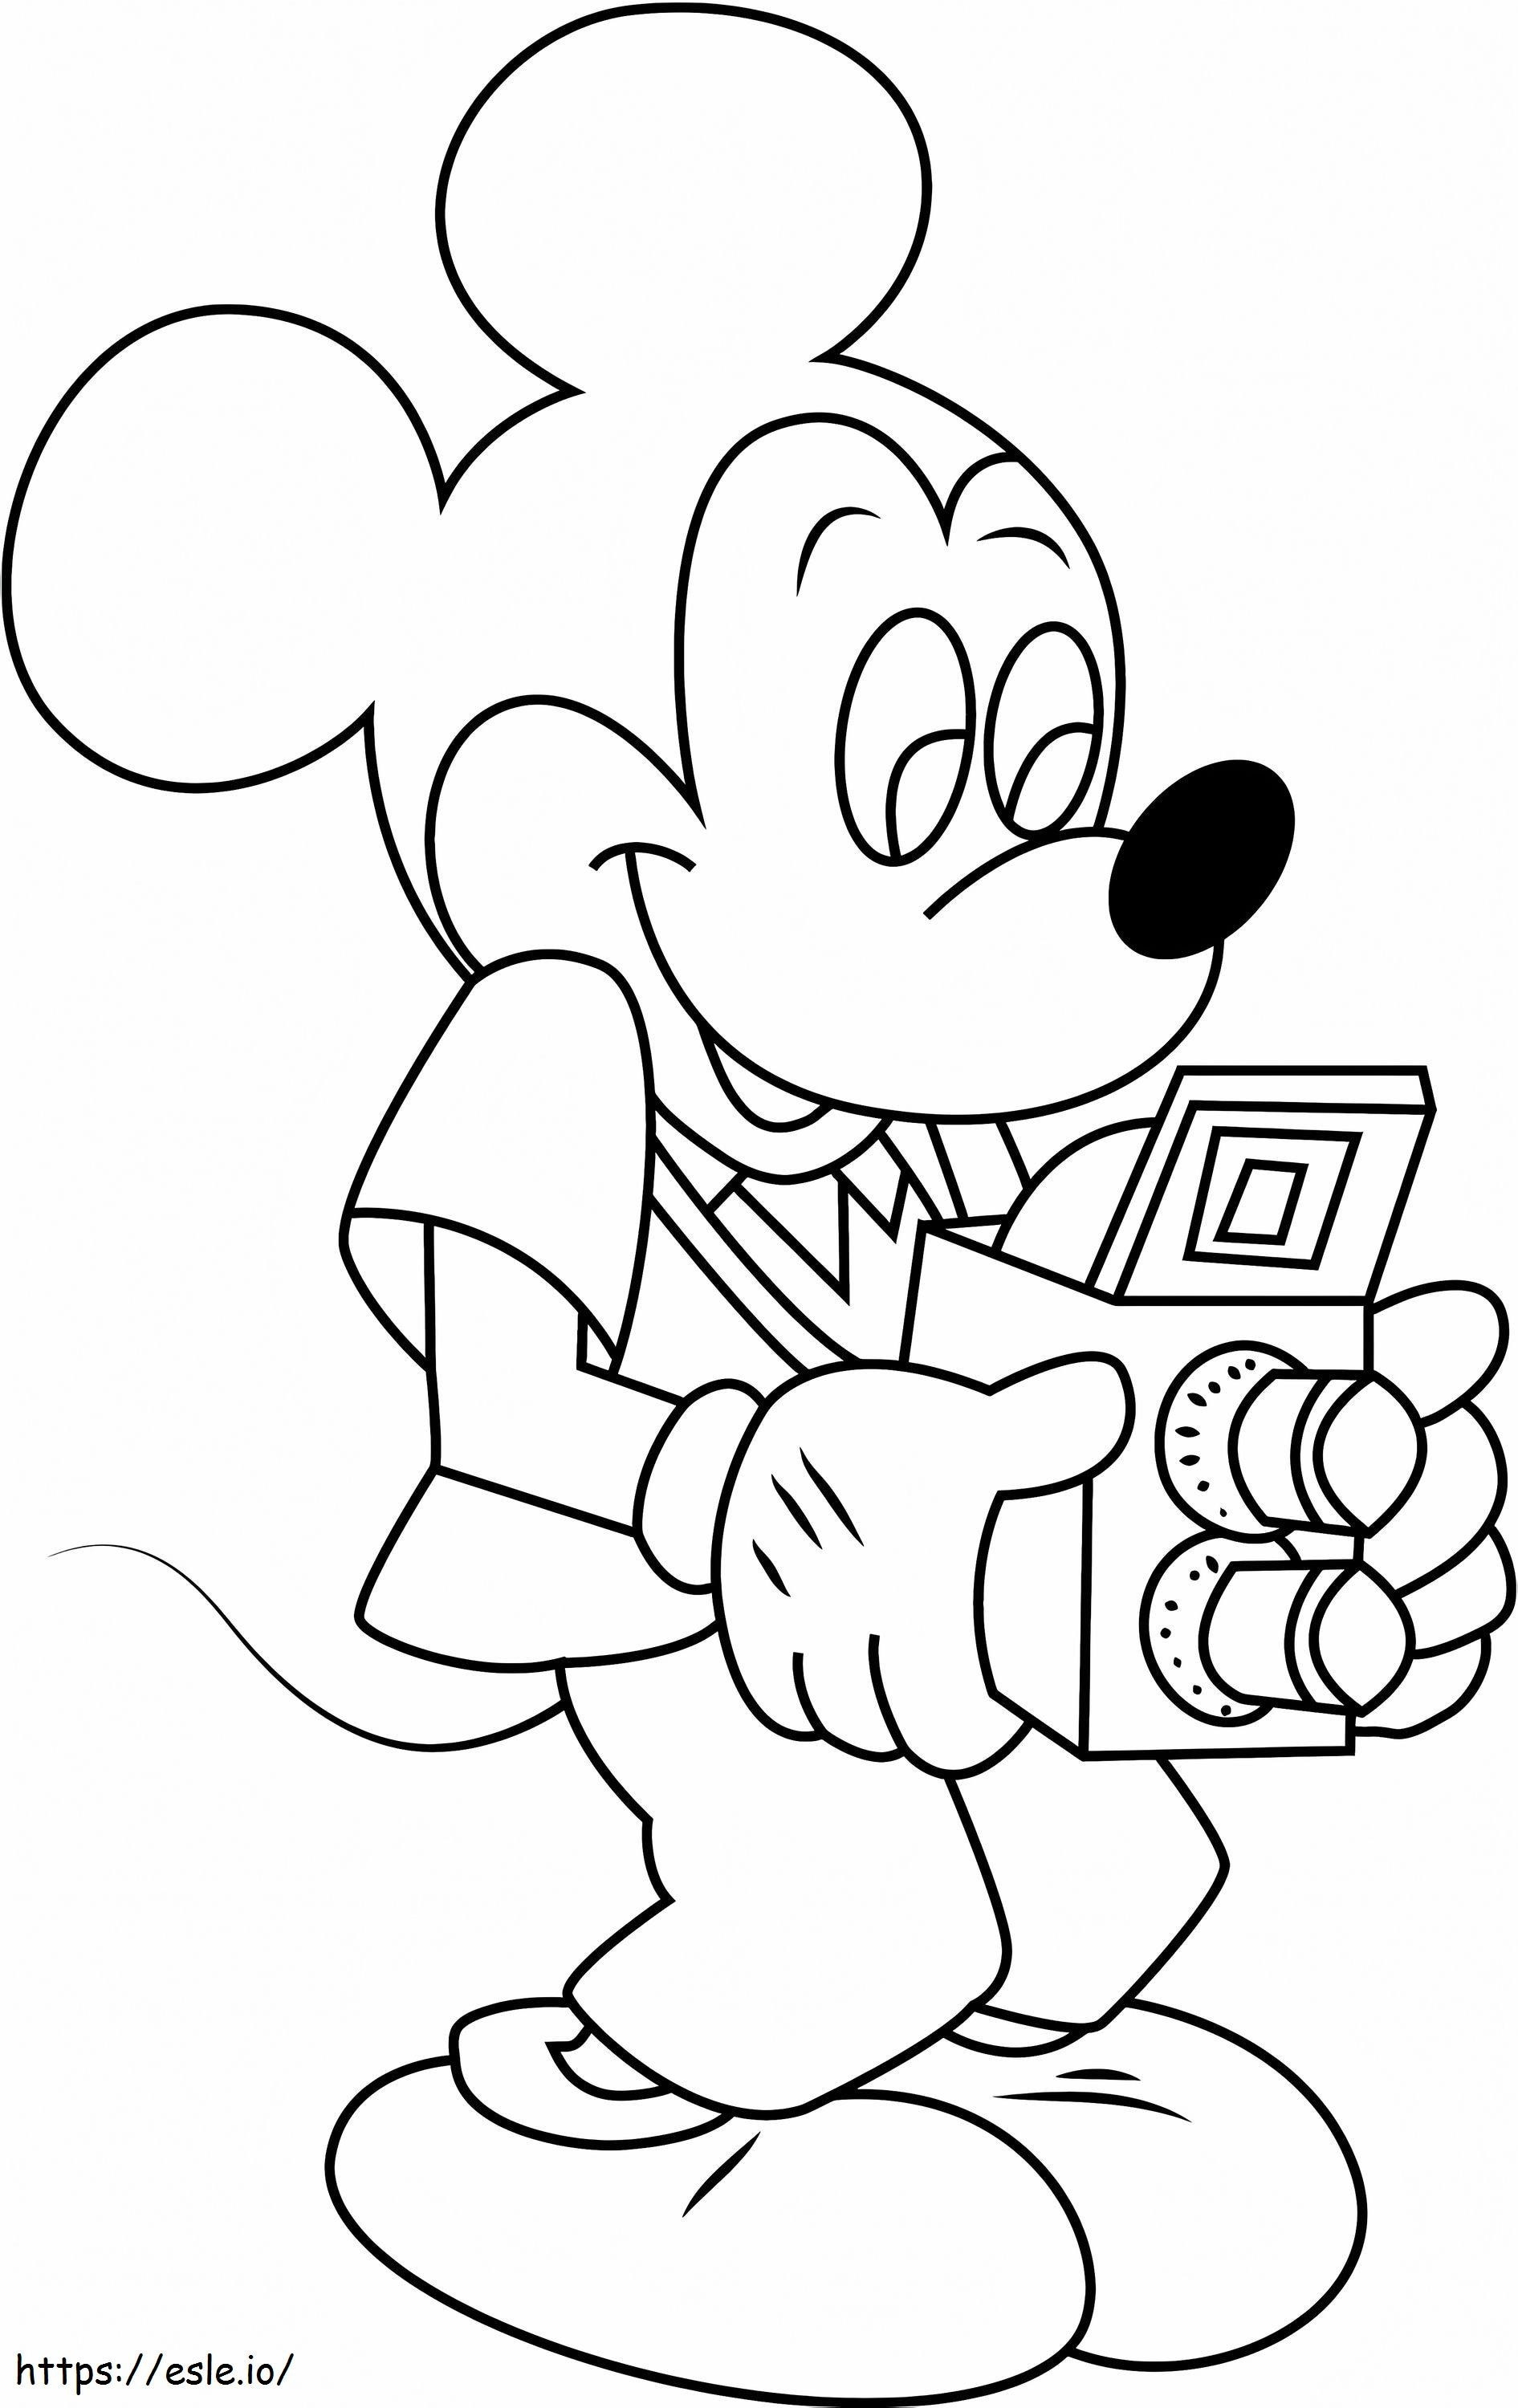 1530758312 Kameralı Mickey Mousea4 boyama